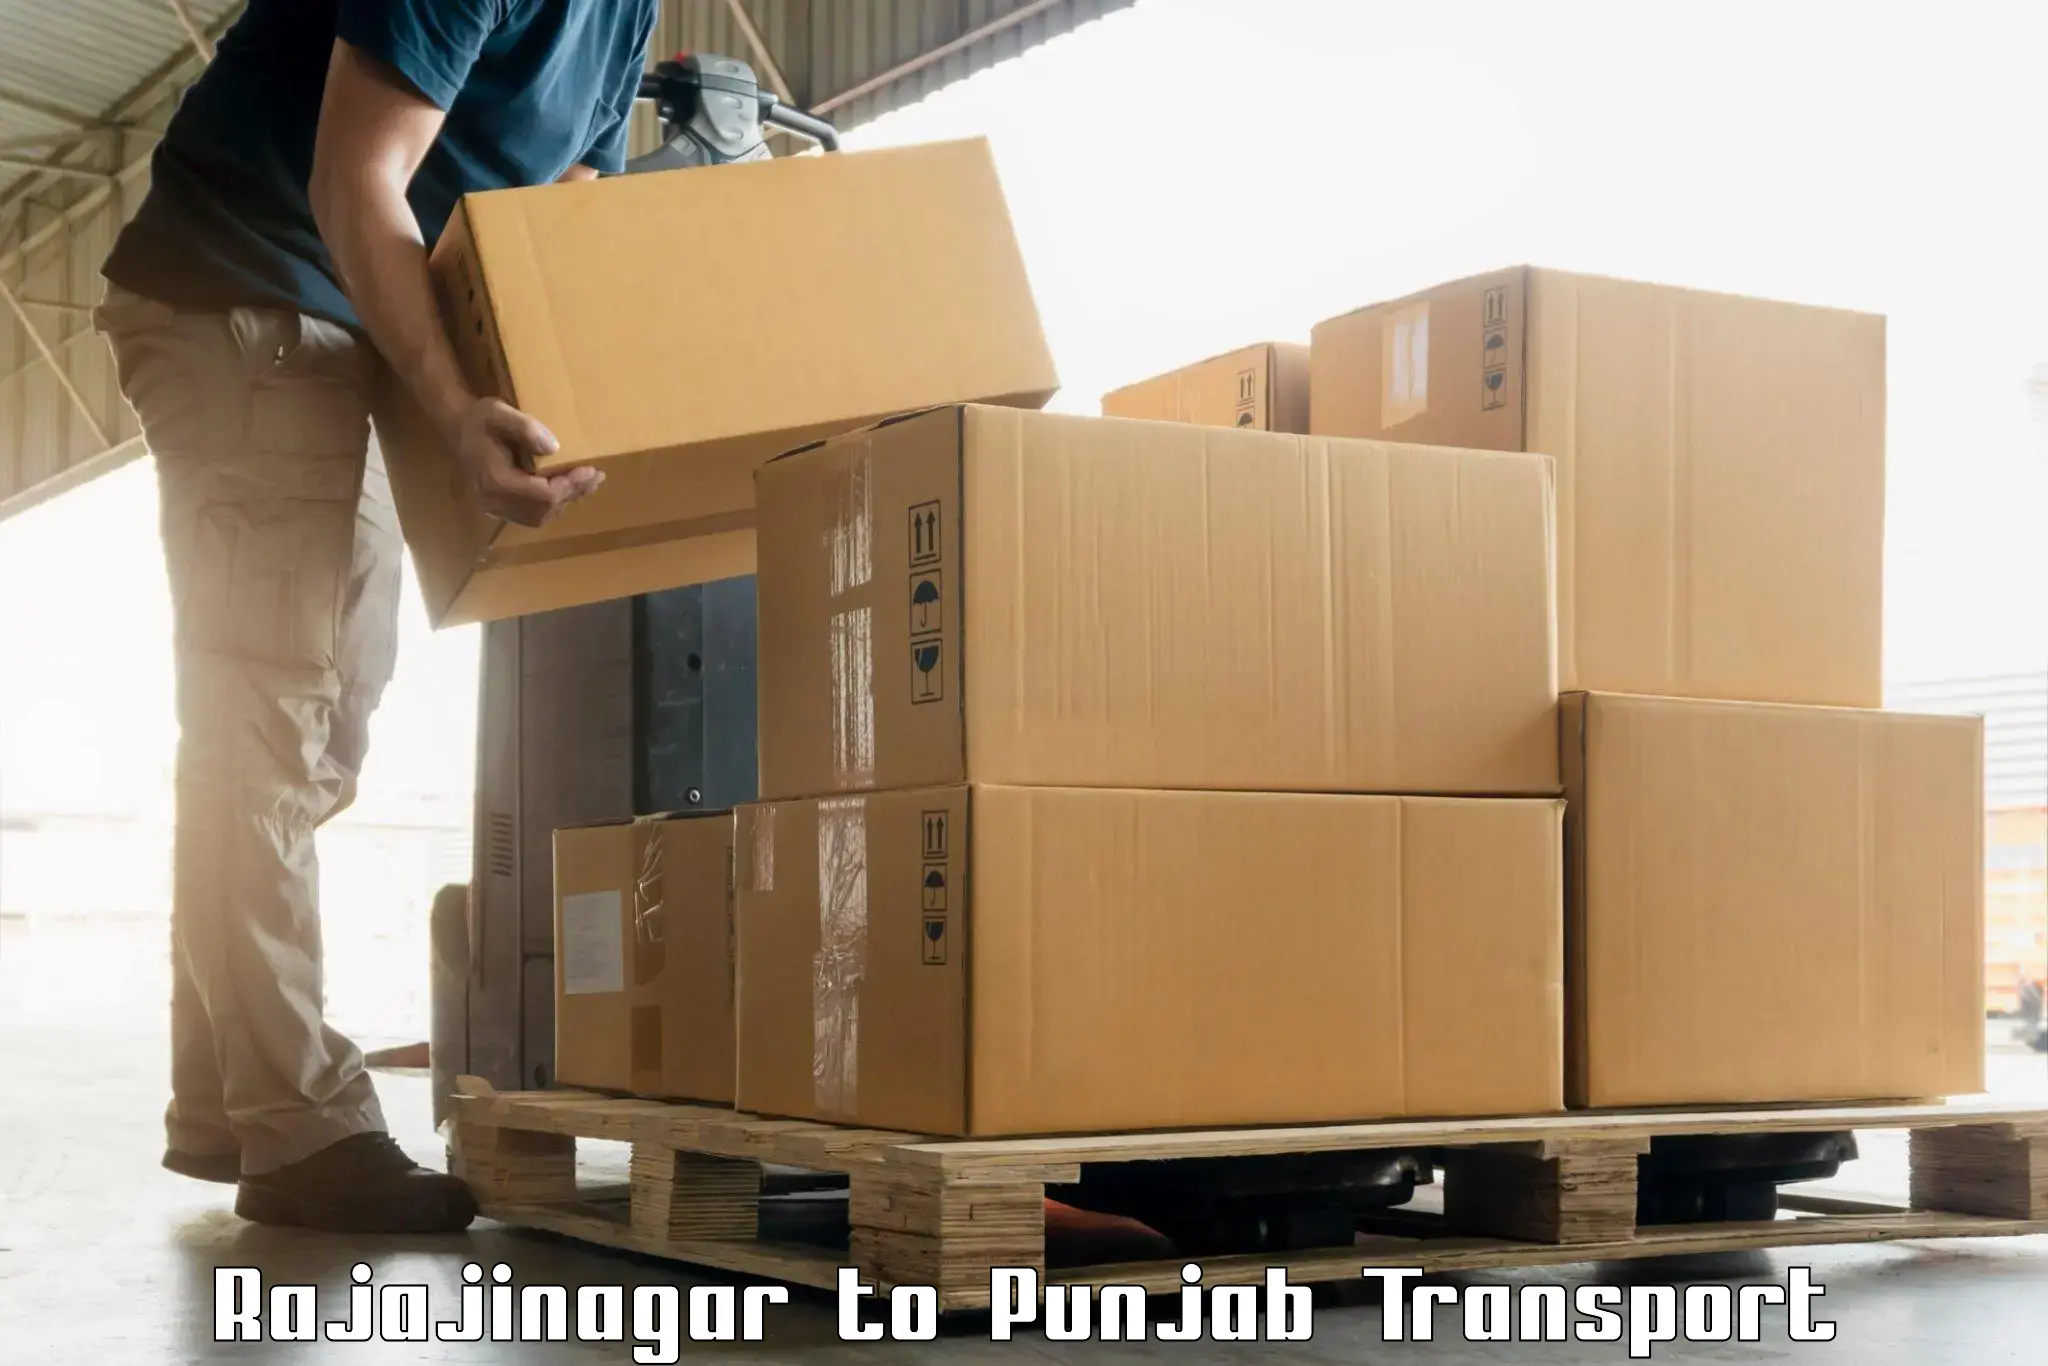 Cargo transport services Rajajinagar to Malerkotla